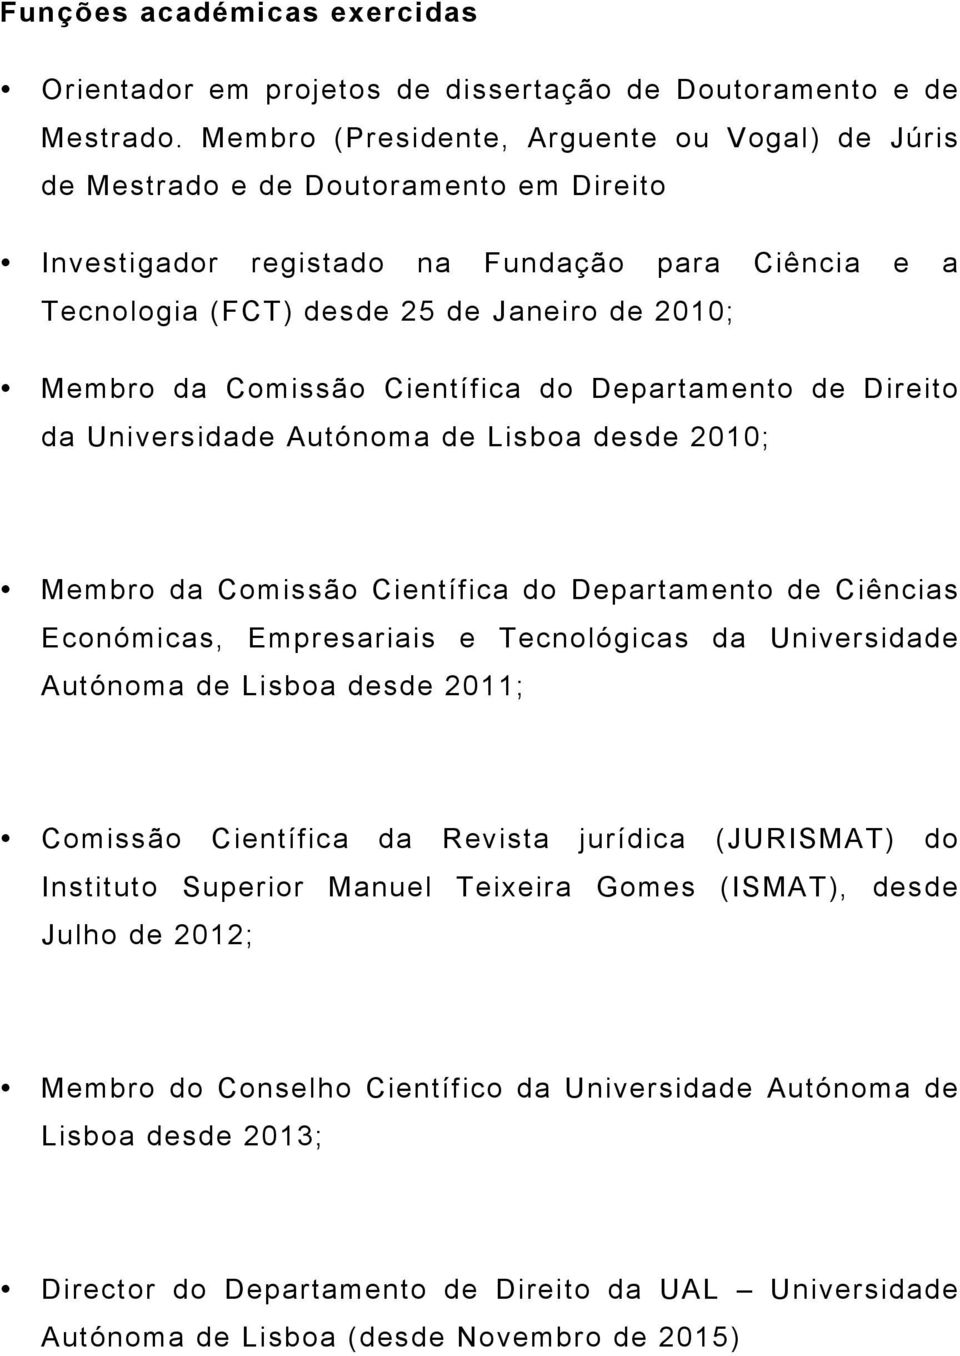 Comissão Científica do Departamento de Direito da Universidade Autónoma de Lisboa desde 2010; Membro da Comissão Científica do Departamento de Ciências Económicas, Empresariais e Tecnológicas da